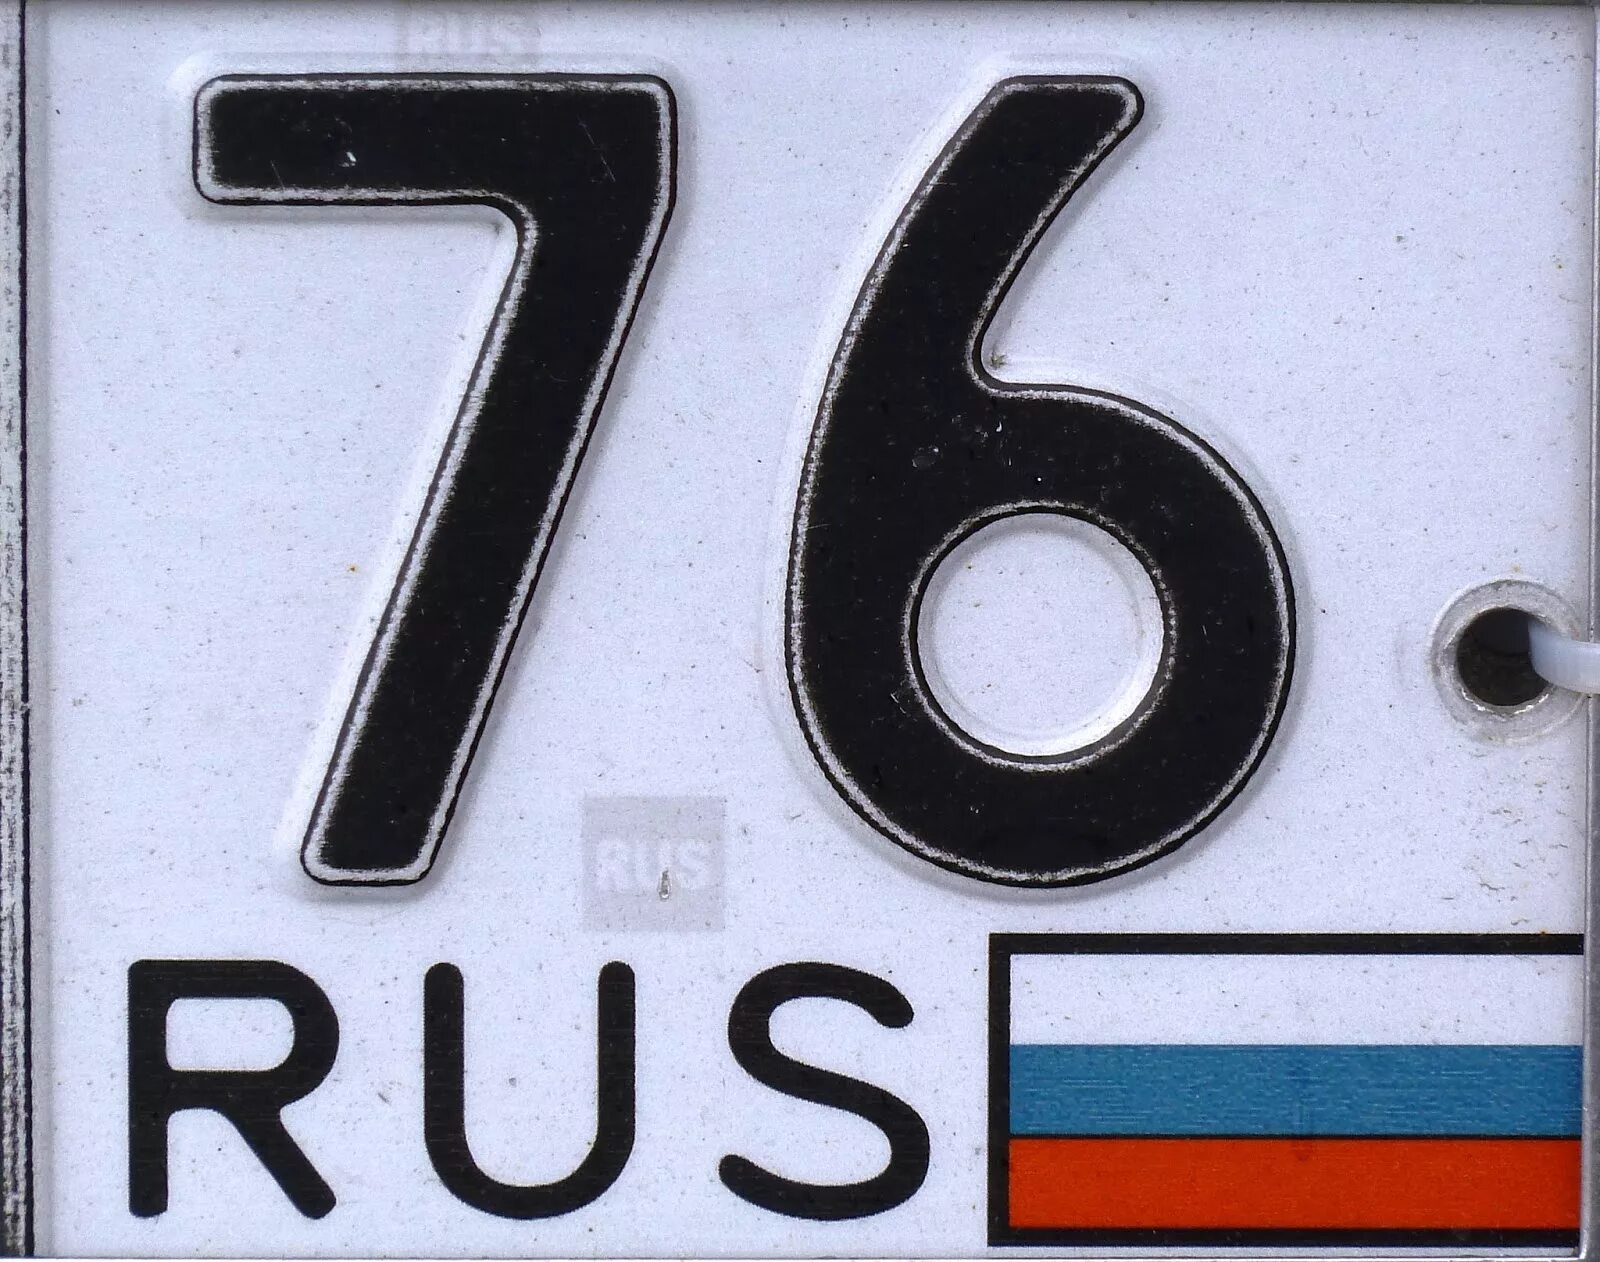 Автомобиля 76. 76 Регион. Автомобильные номера 76. Номерной знак 76 регион. 76 Регион Ярославль.